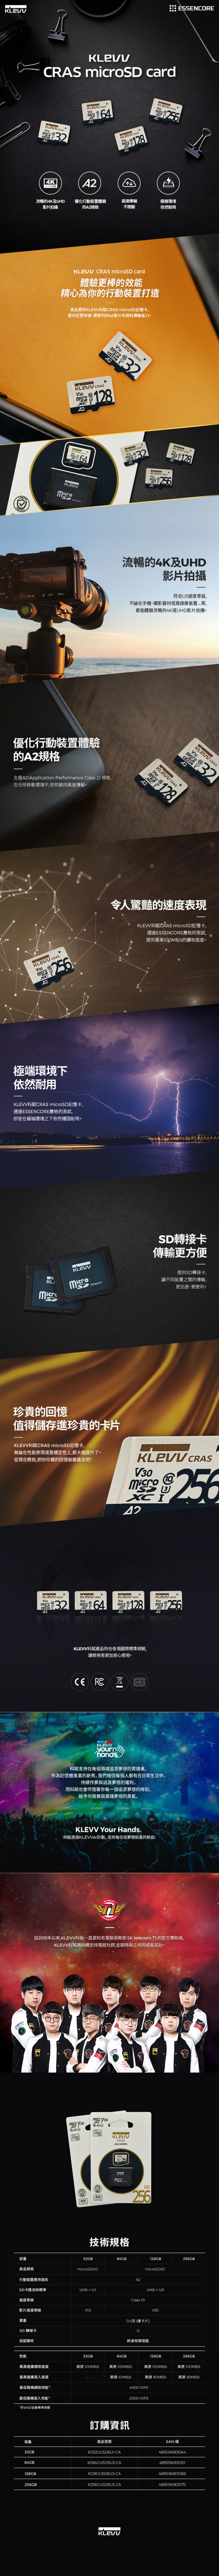 KLEVV 科賦 CRAS 256G MicroSDXC UHS-I U3 V30 A2 (附轉卡)